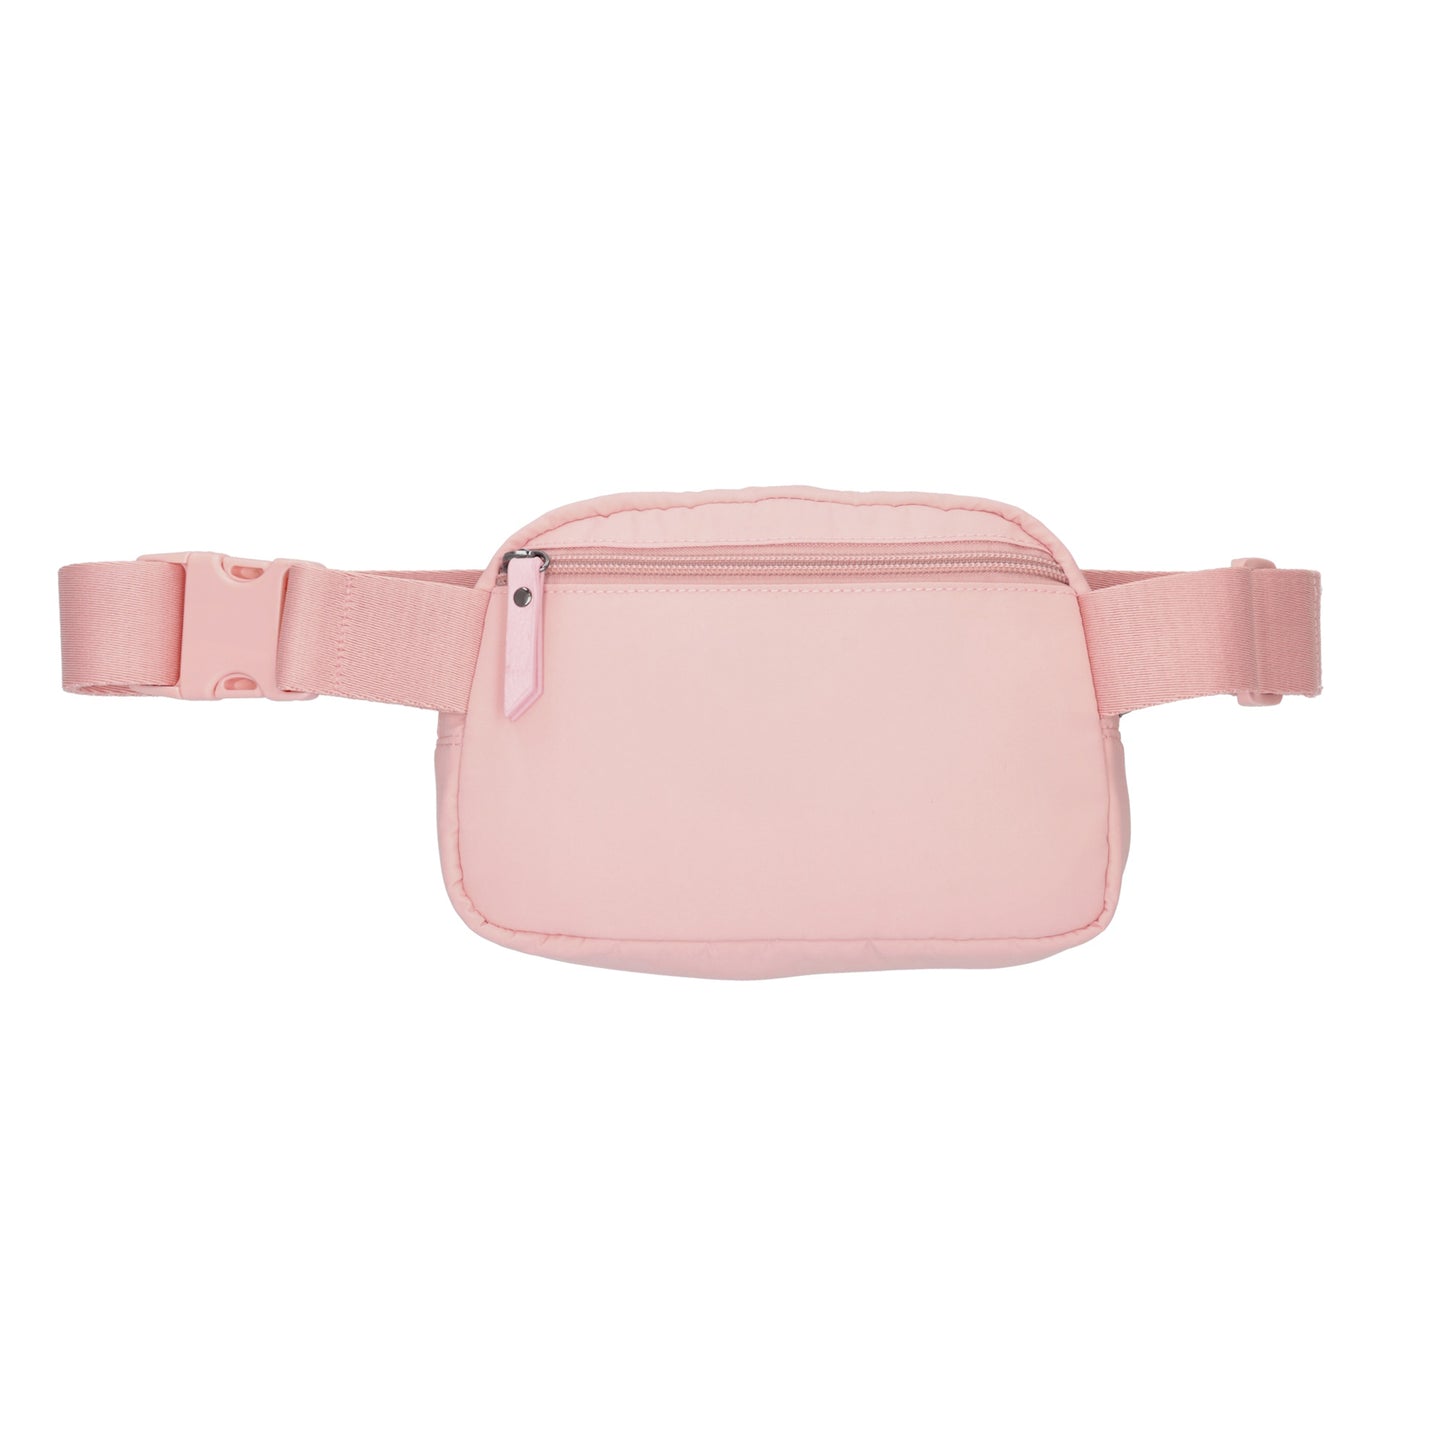 Bodybag|Gürteltasche 19,5 x 14cm in Rosa wattiert